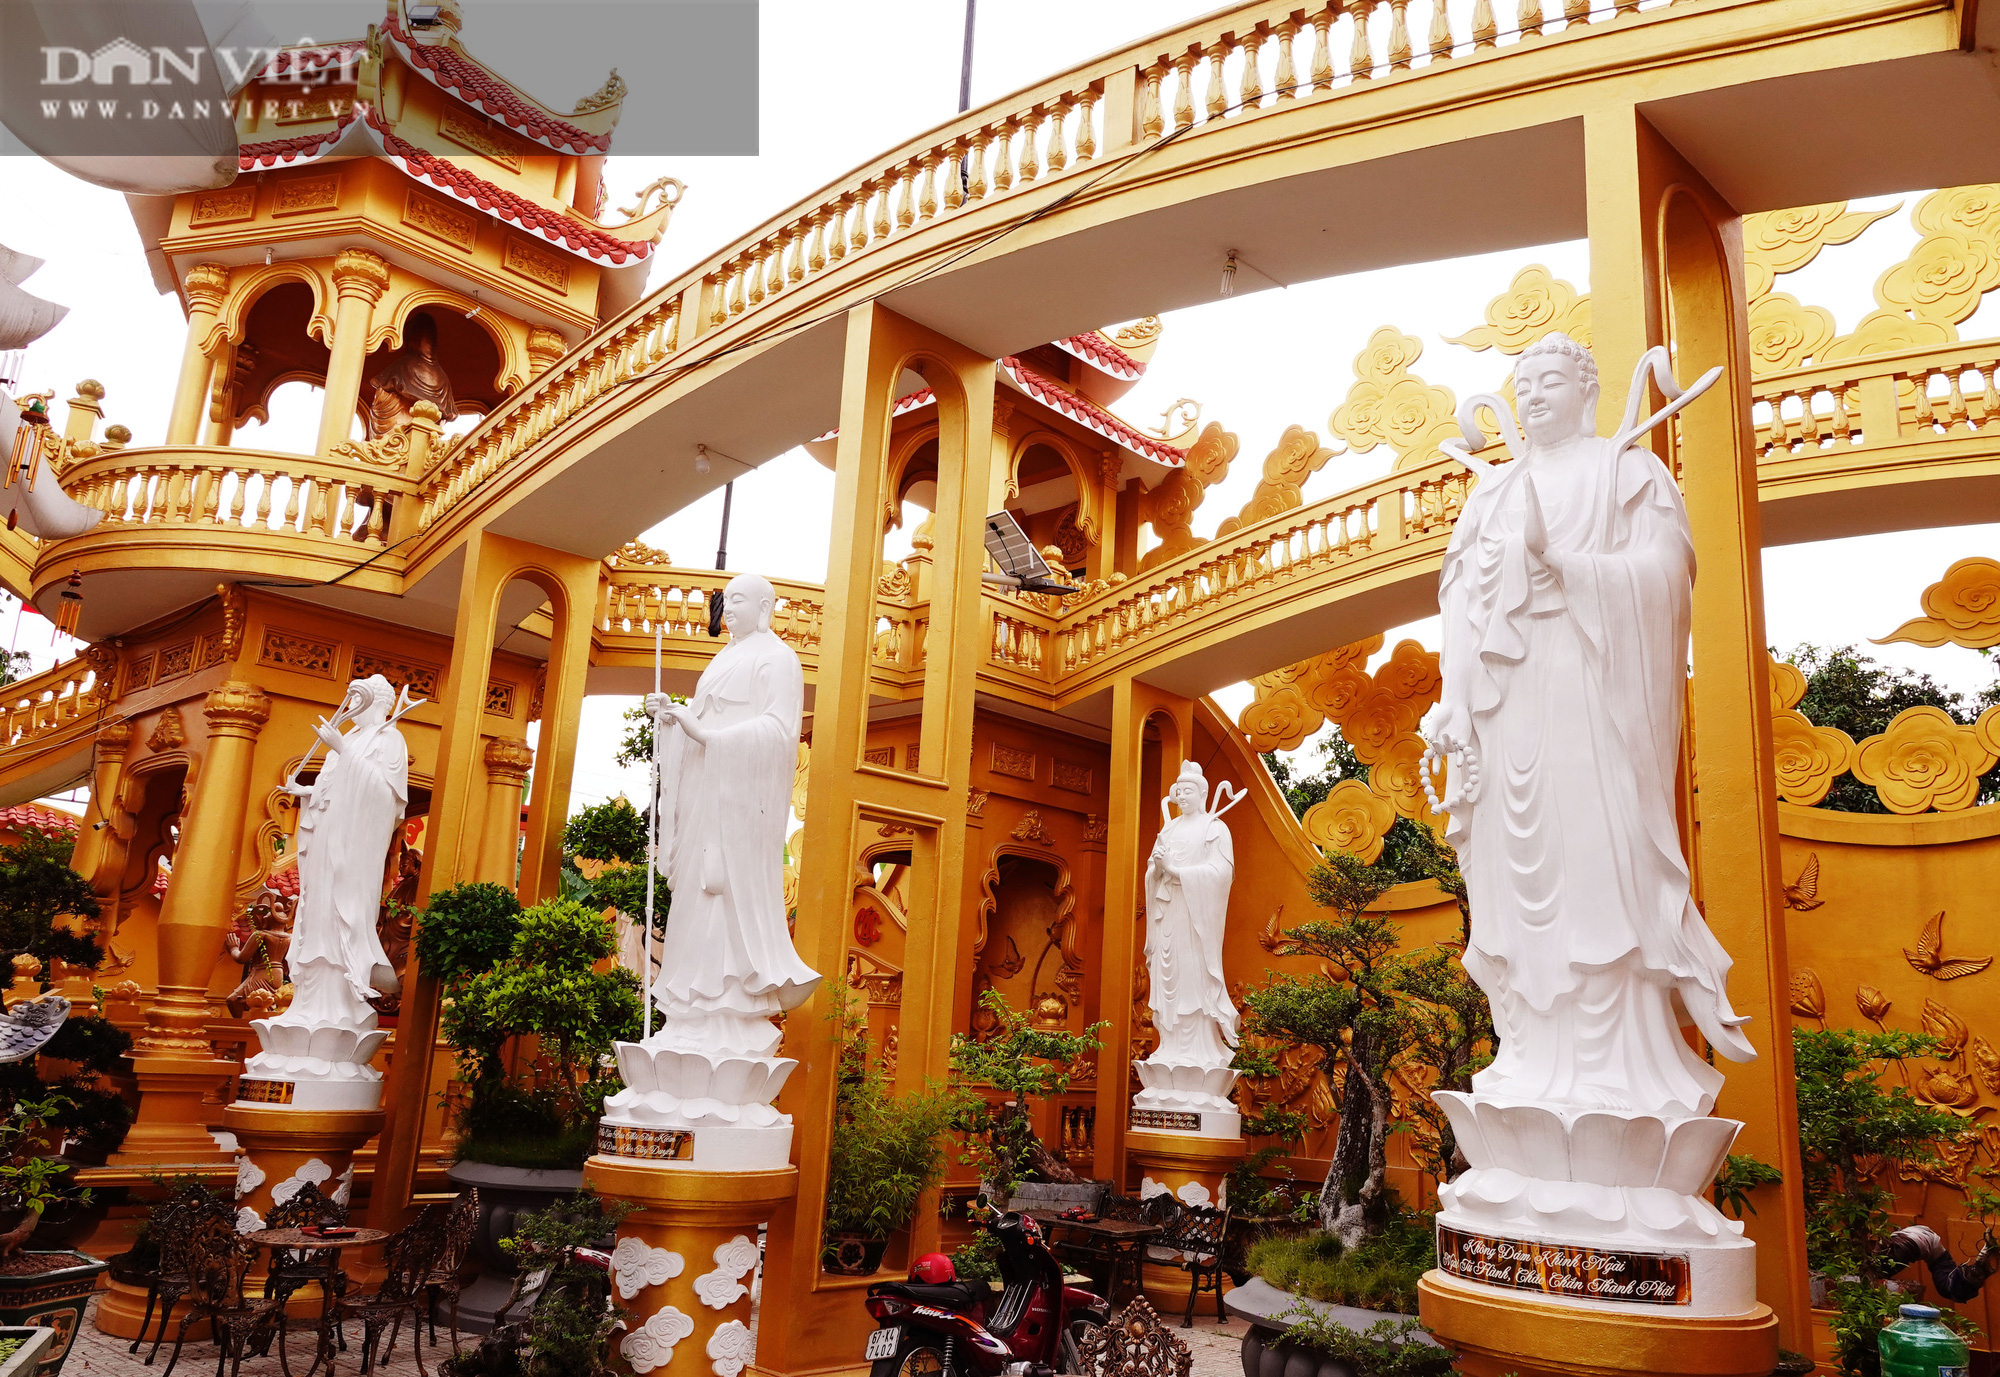 Ngôi chùa ở Cù Lao Giêng với quần thể tượng Phật đạt kỷ lục Việt Nam có gì đặc biệt? - Ảnh 3.